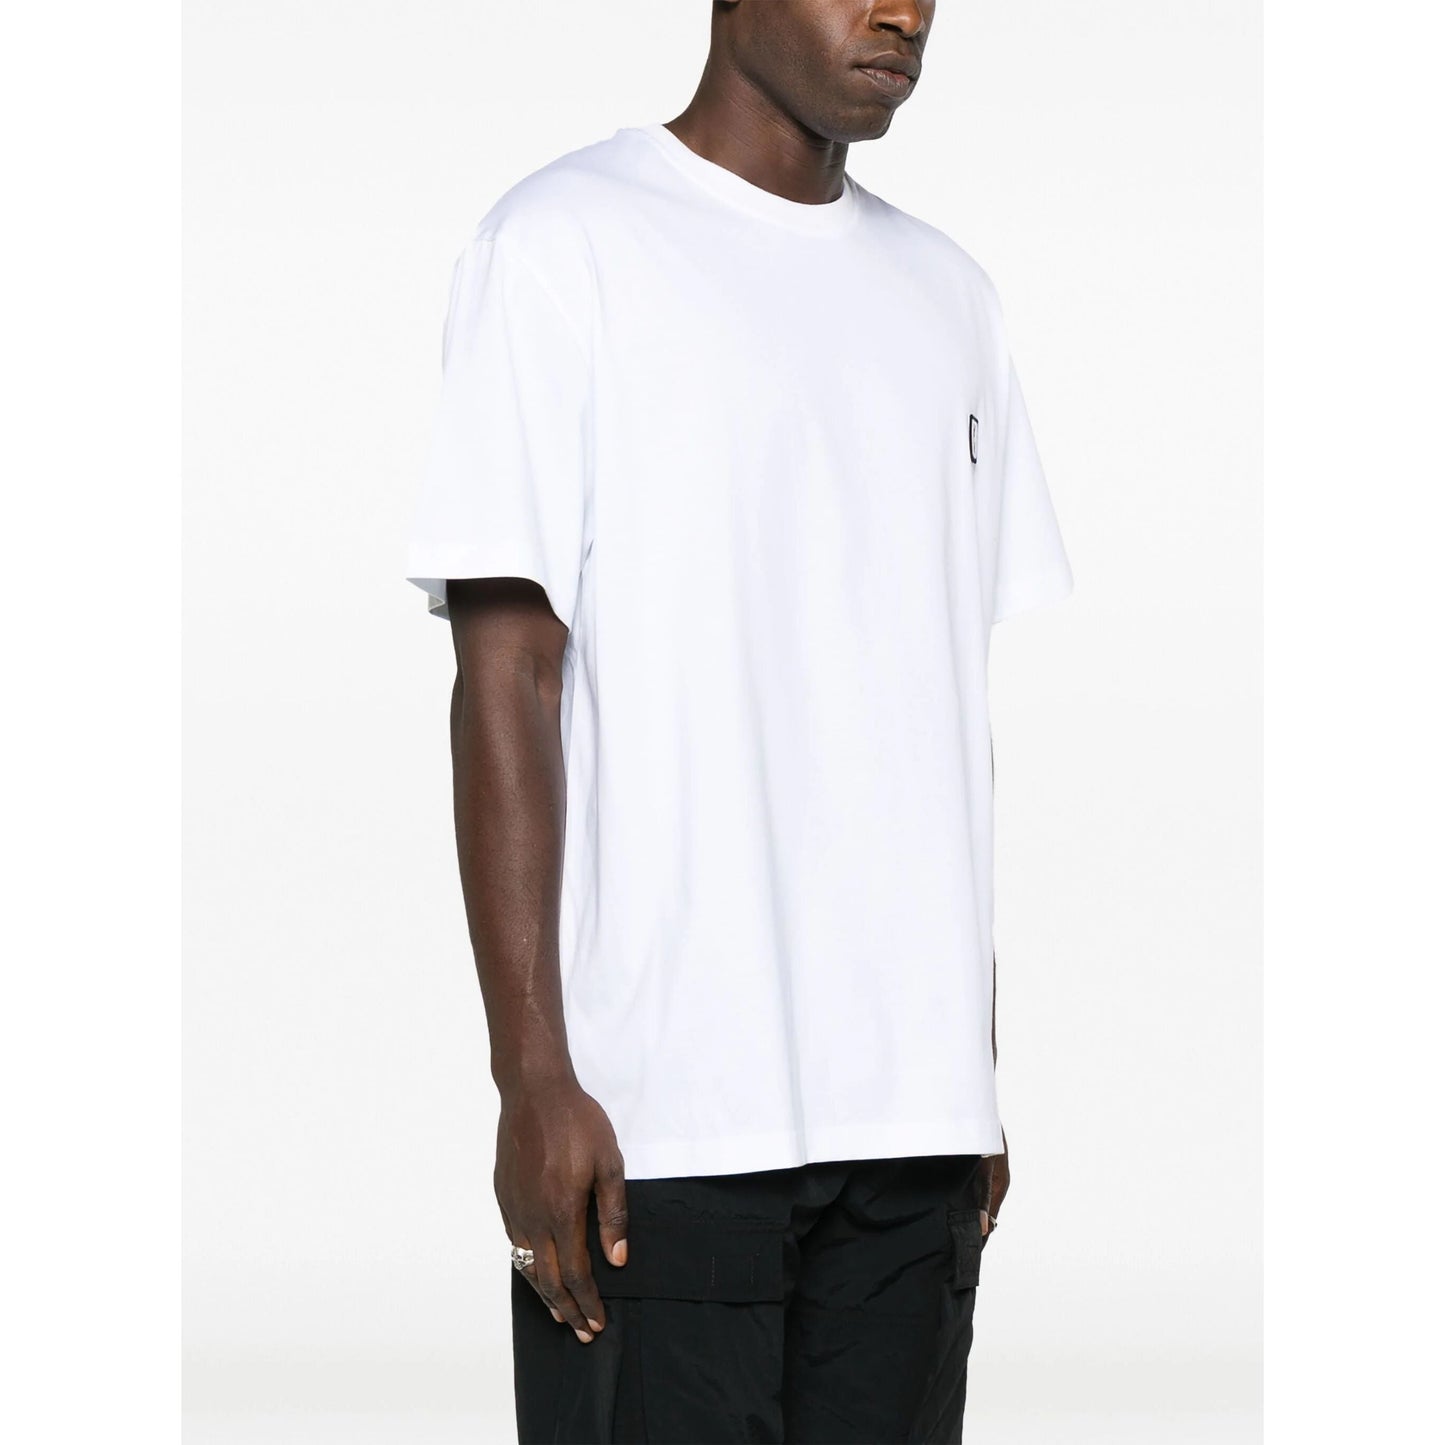 WOOYOUNGMI vyriški balti marškinėliai Mens t-shirt